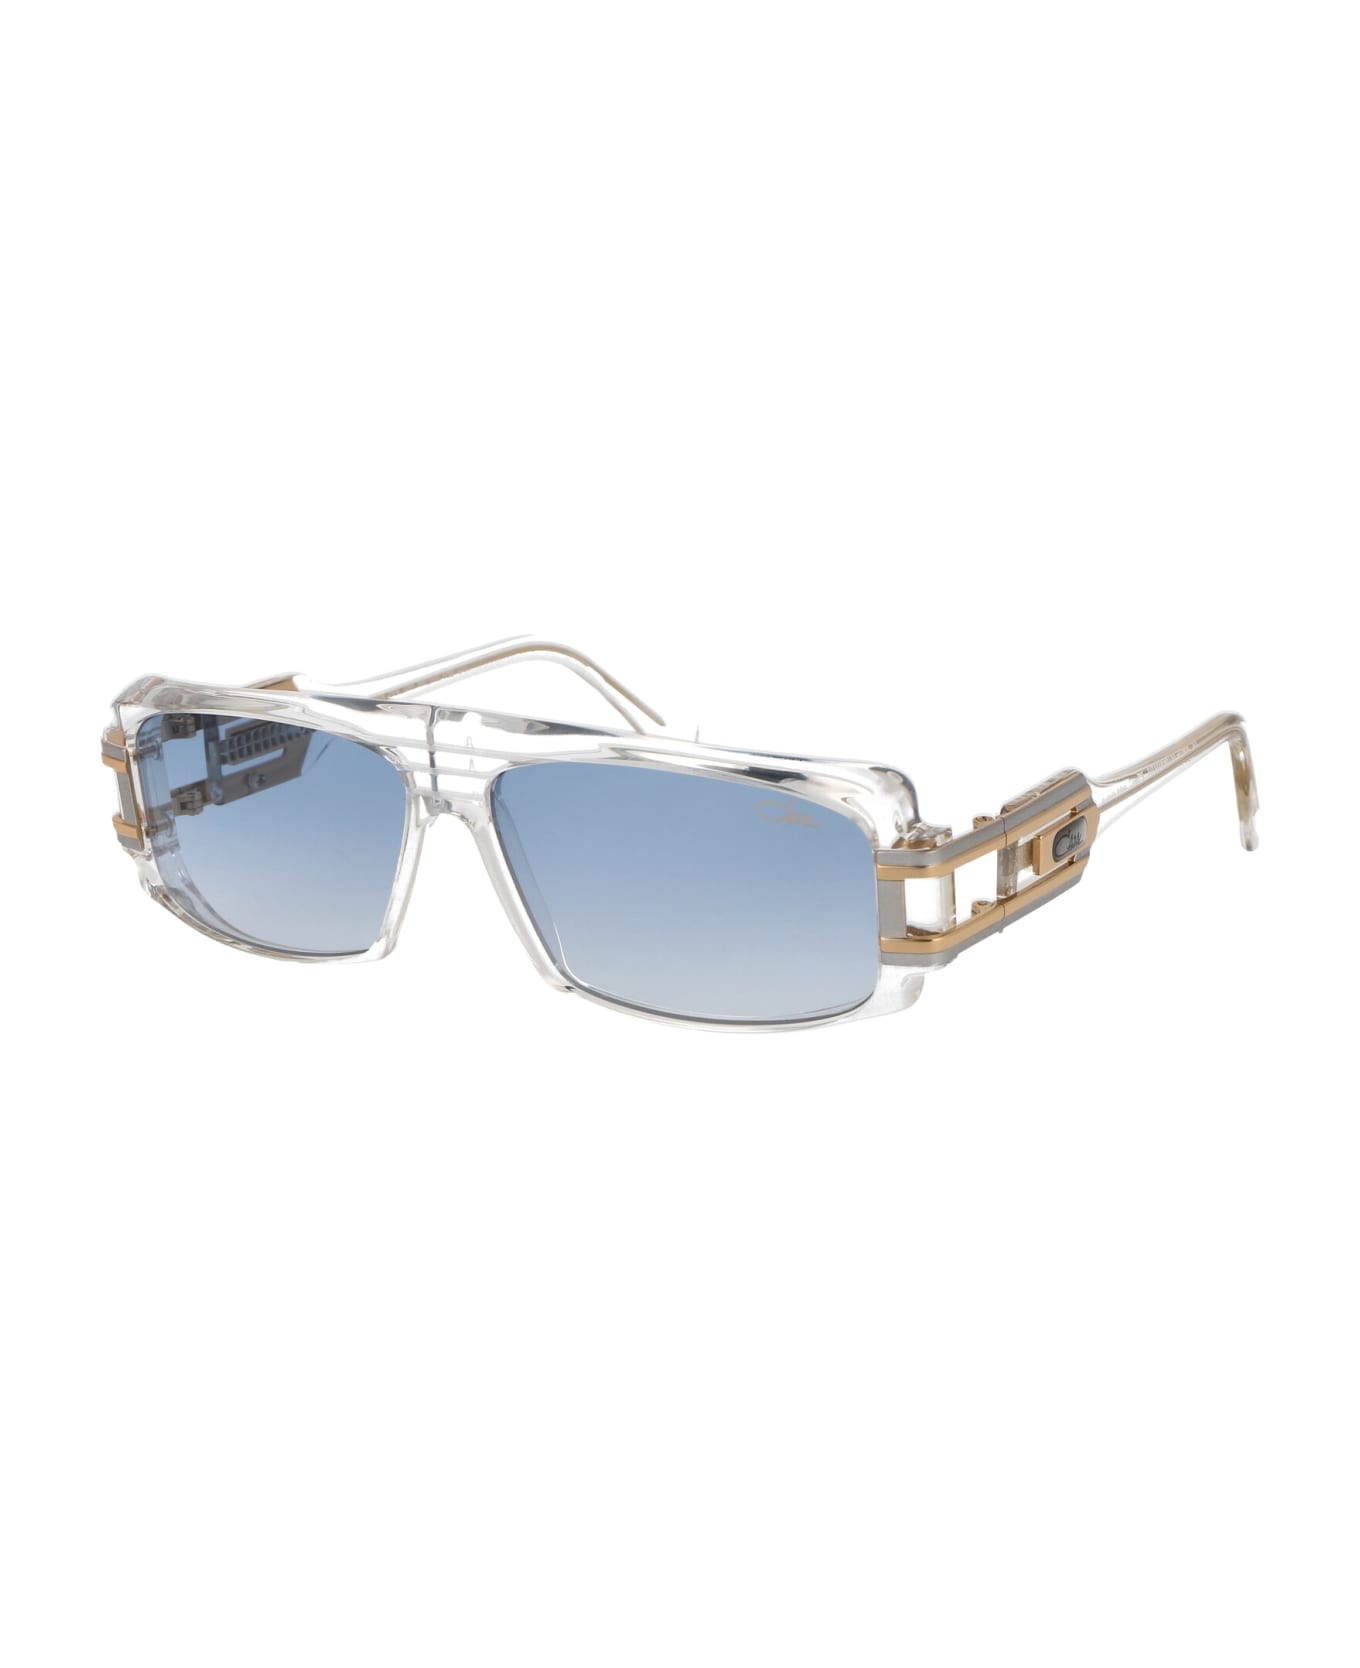 Cazal Mod. 164/3 Sunglasses - 002 CRYSTAL